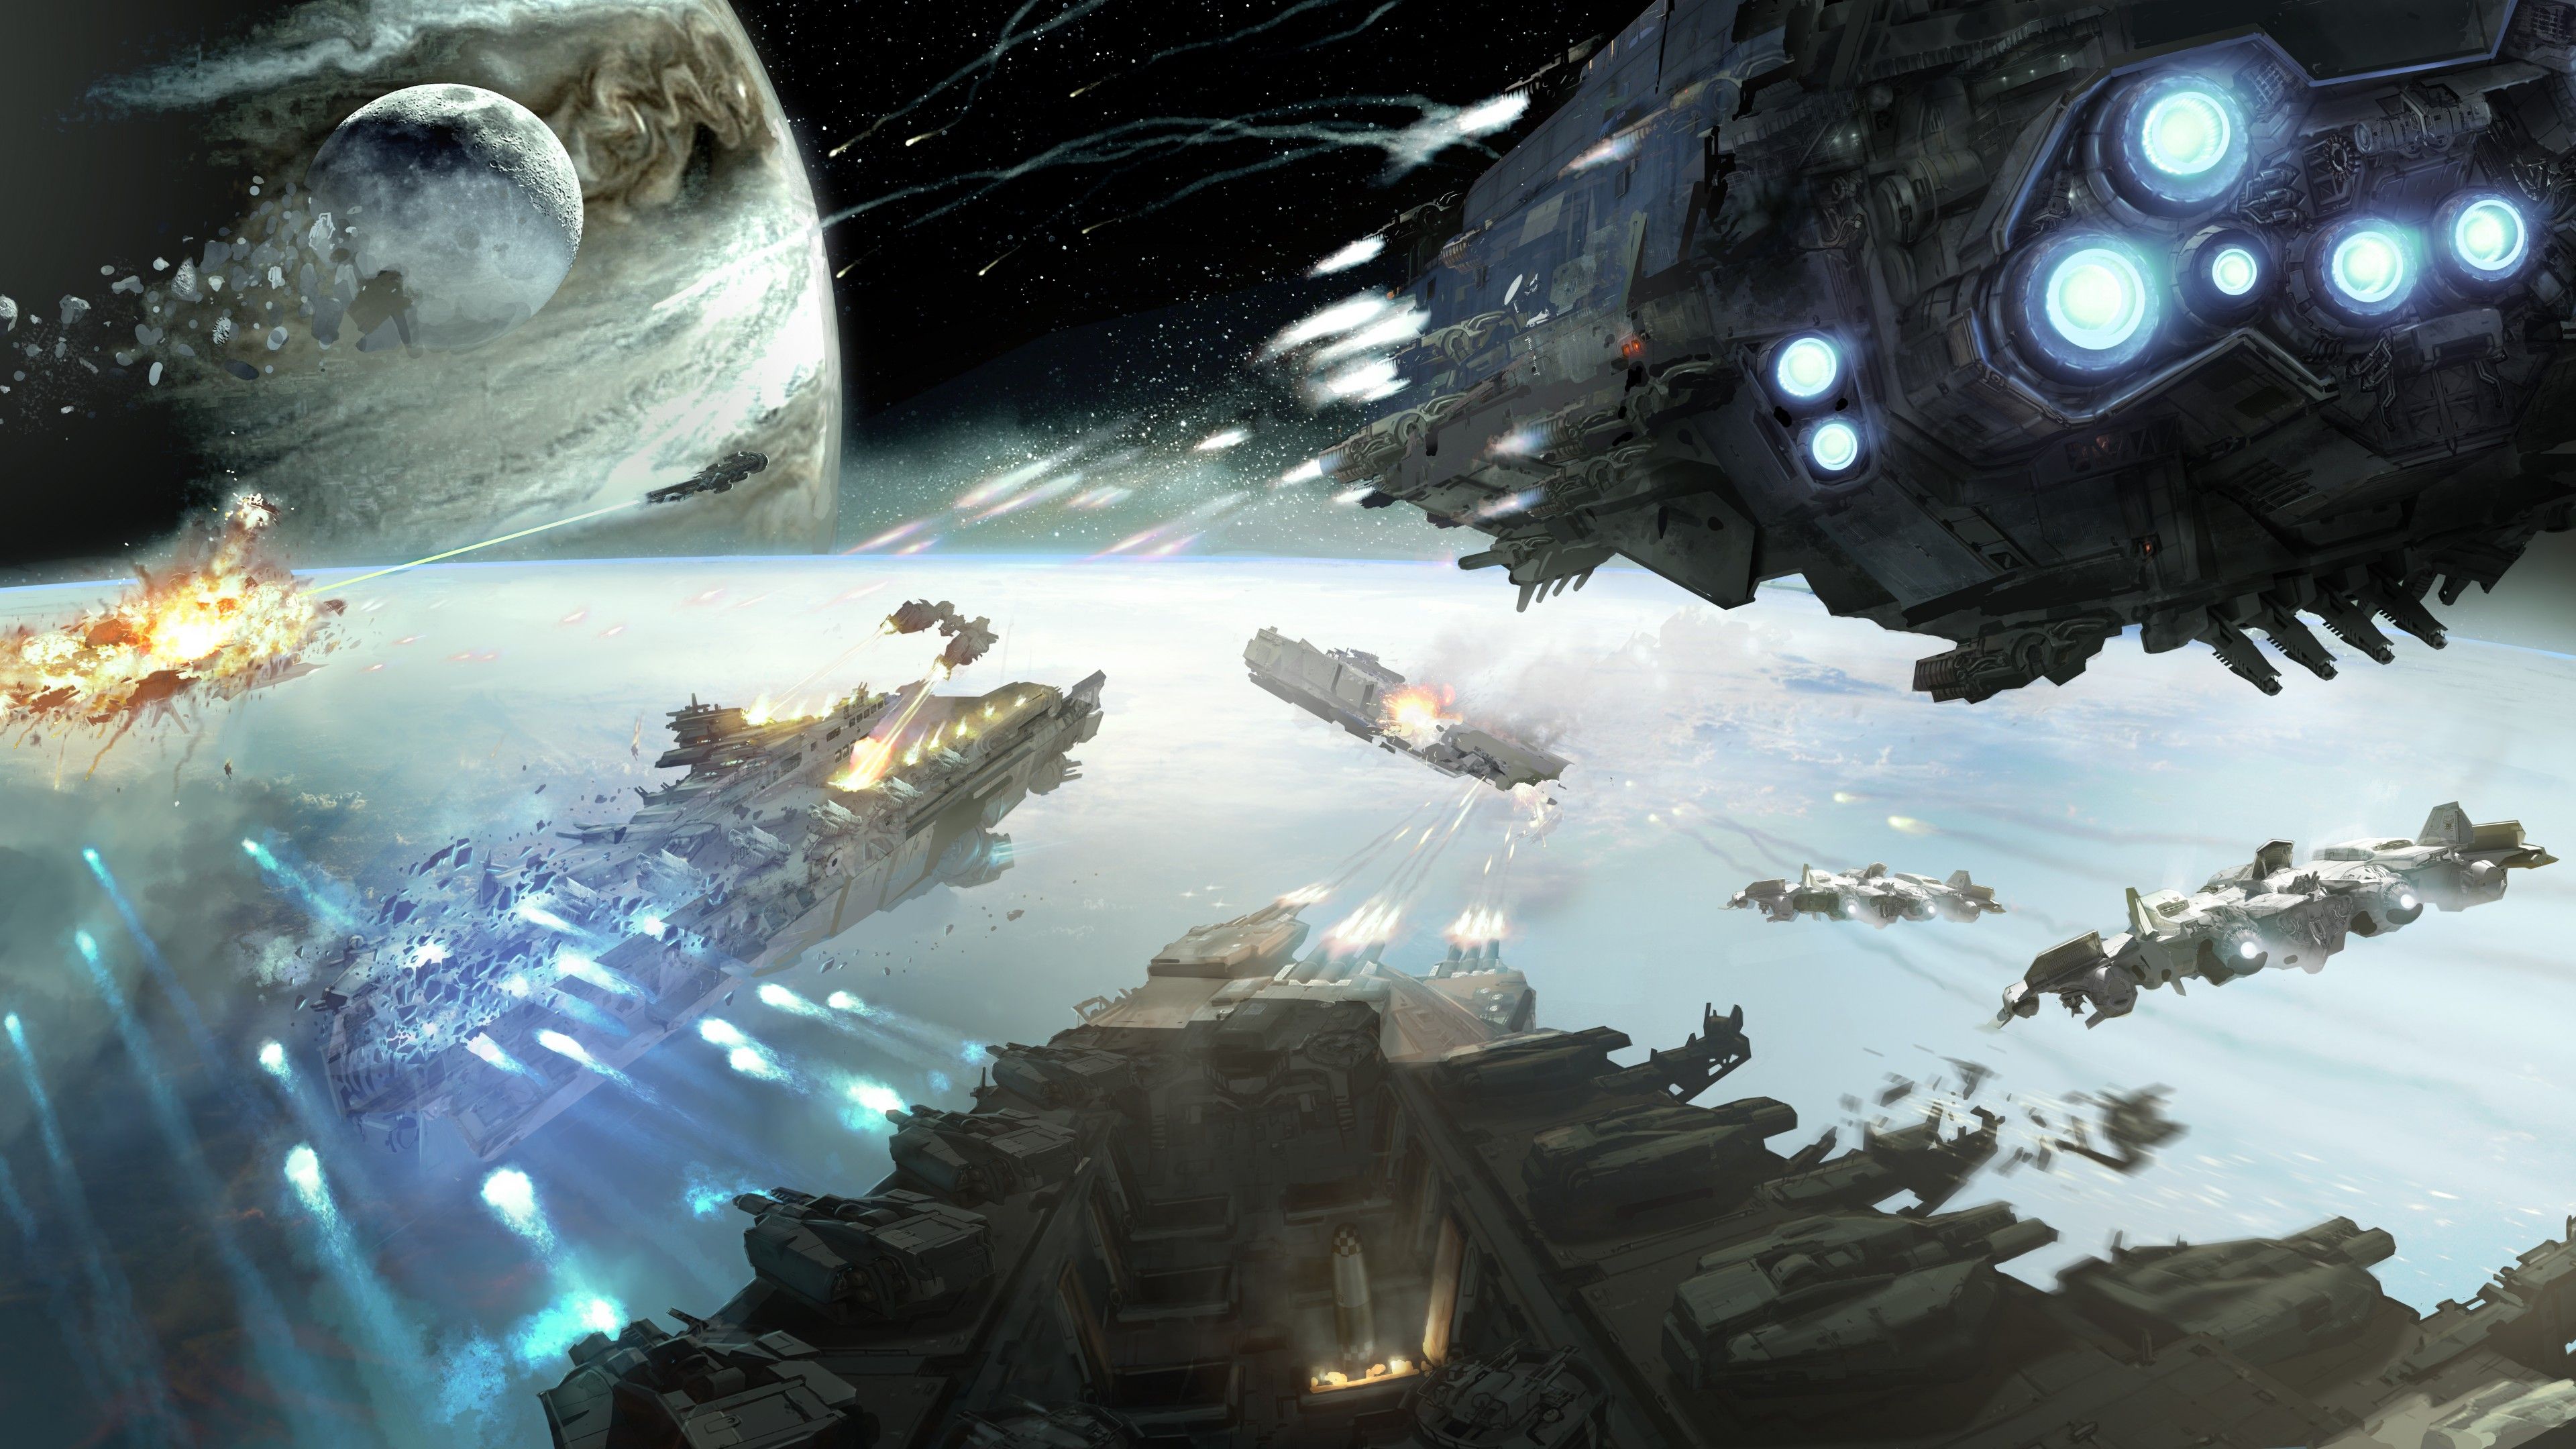 Wallpaper Dreadnought, game, space, battle, planet, starship, fire, galaxy, art, screenshot, 4k, 5k, PC, Art